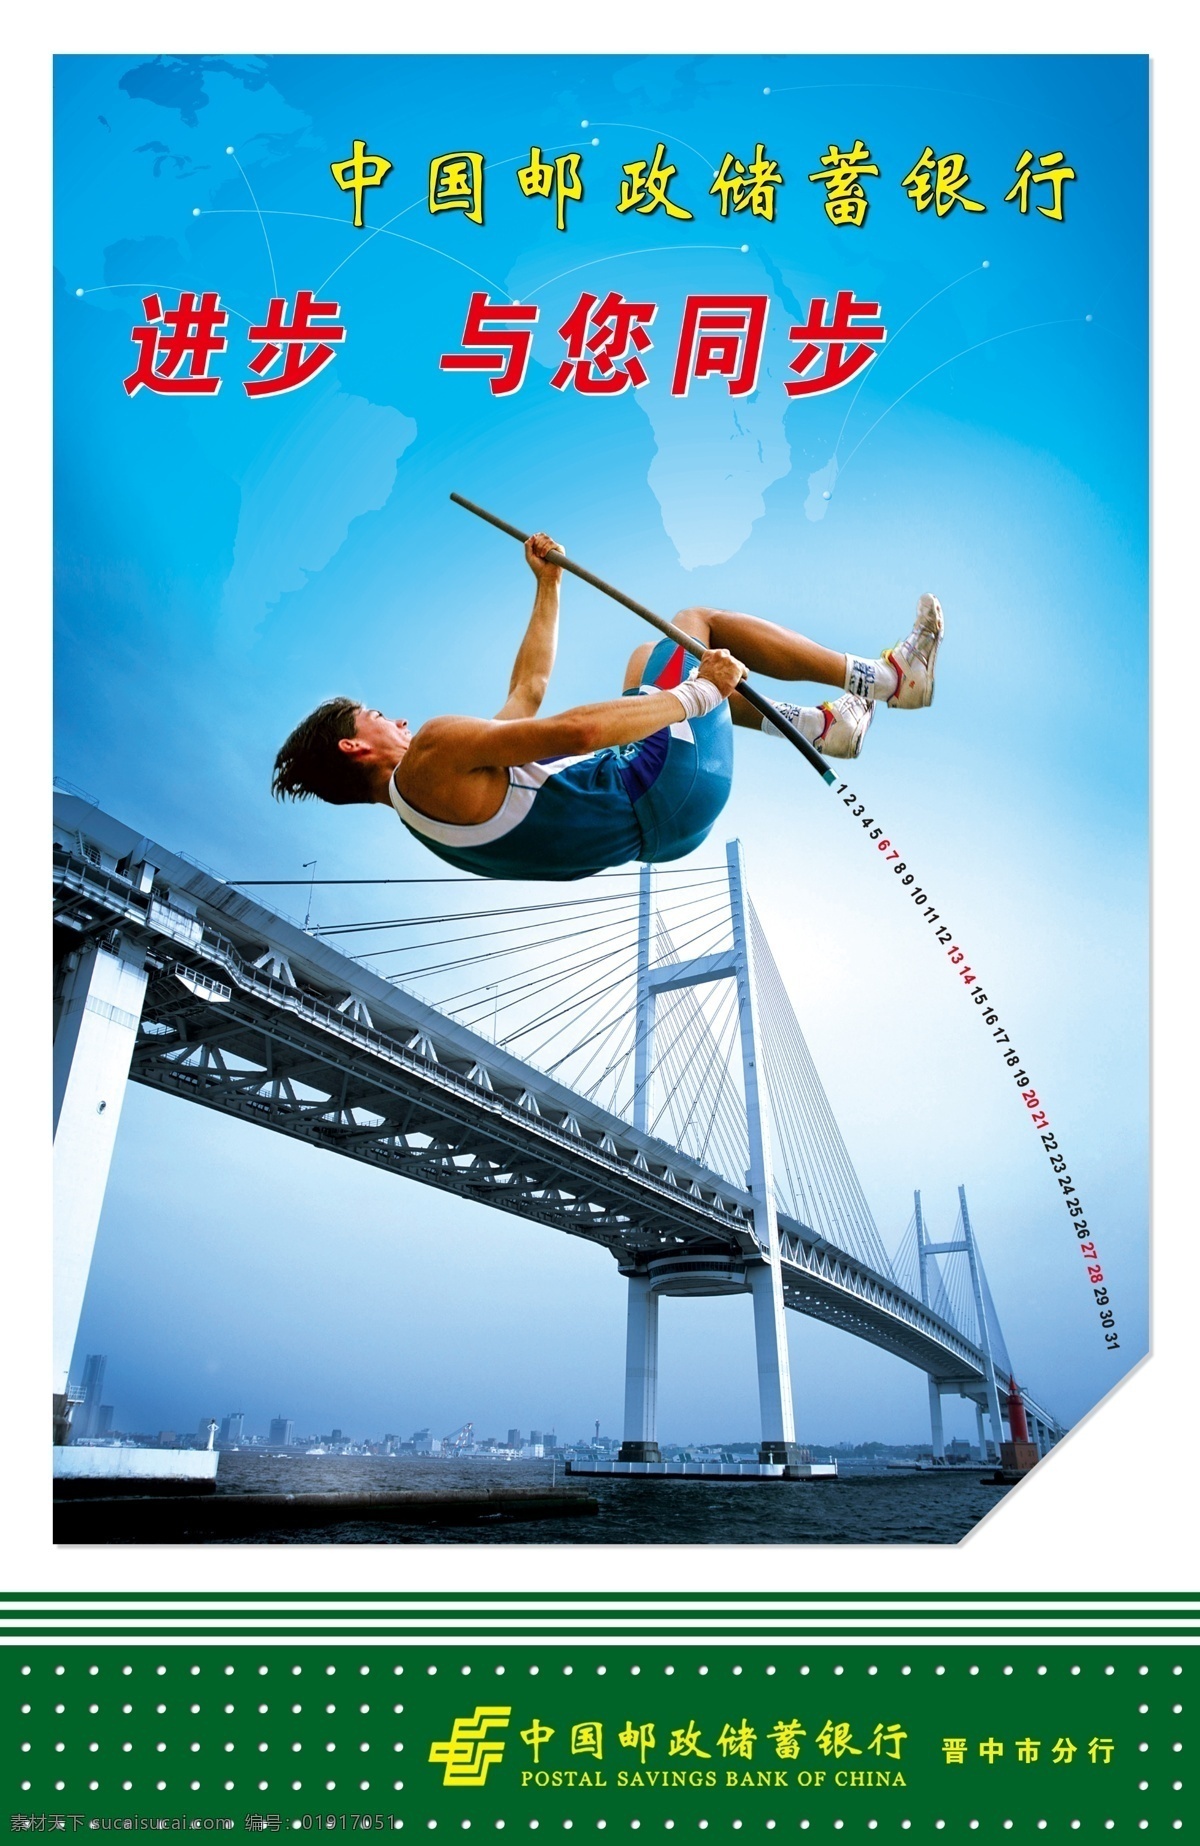 进步与您同步 中国邮政 中国 邮政储蓄 银行 企业文化 进步 同步 大桥 撑杆跳 广告设计模板 源文件